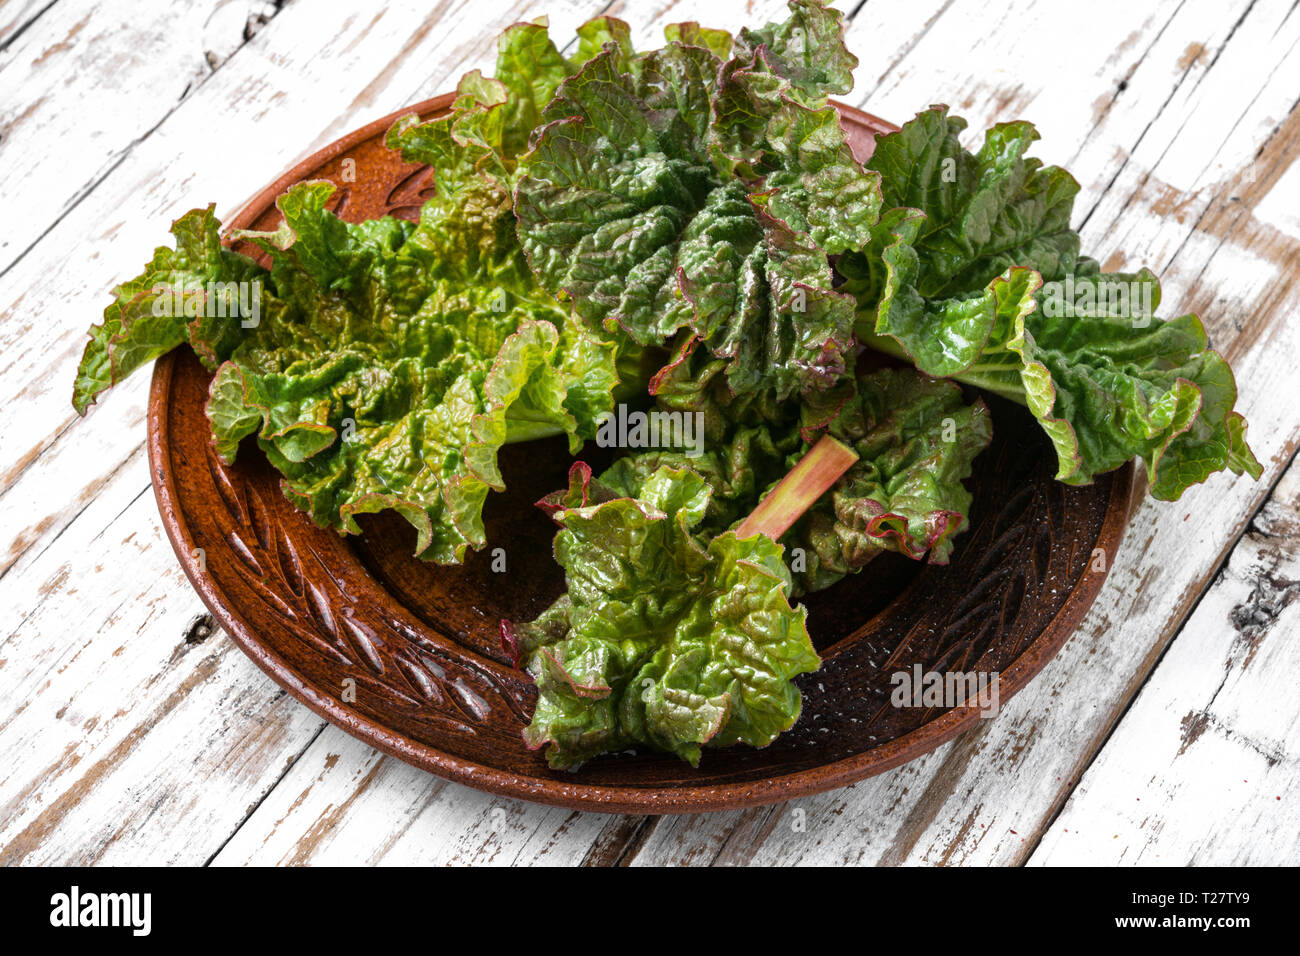 Bündel frisch gepflückt organische Rhabarber Rhabarber auf hölzernen Tisch. Stockfoto